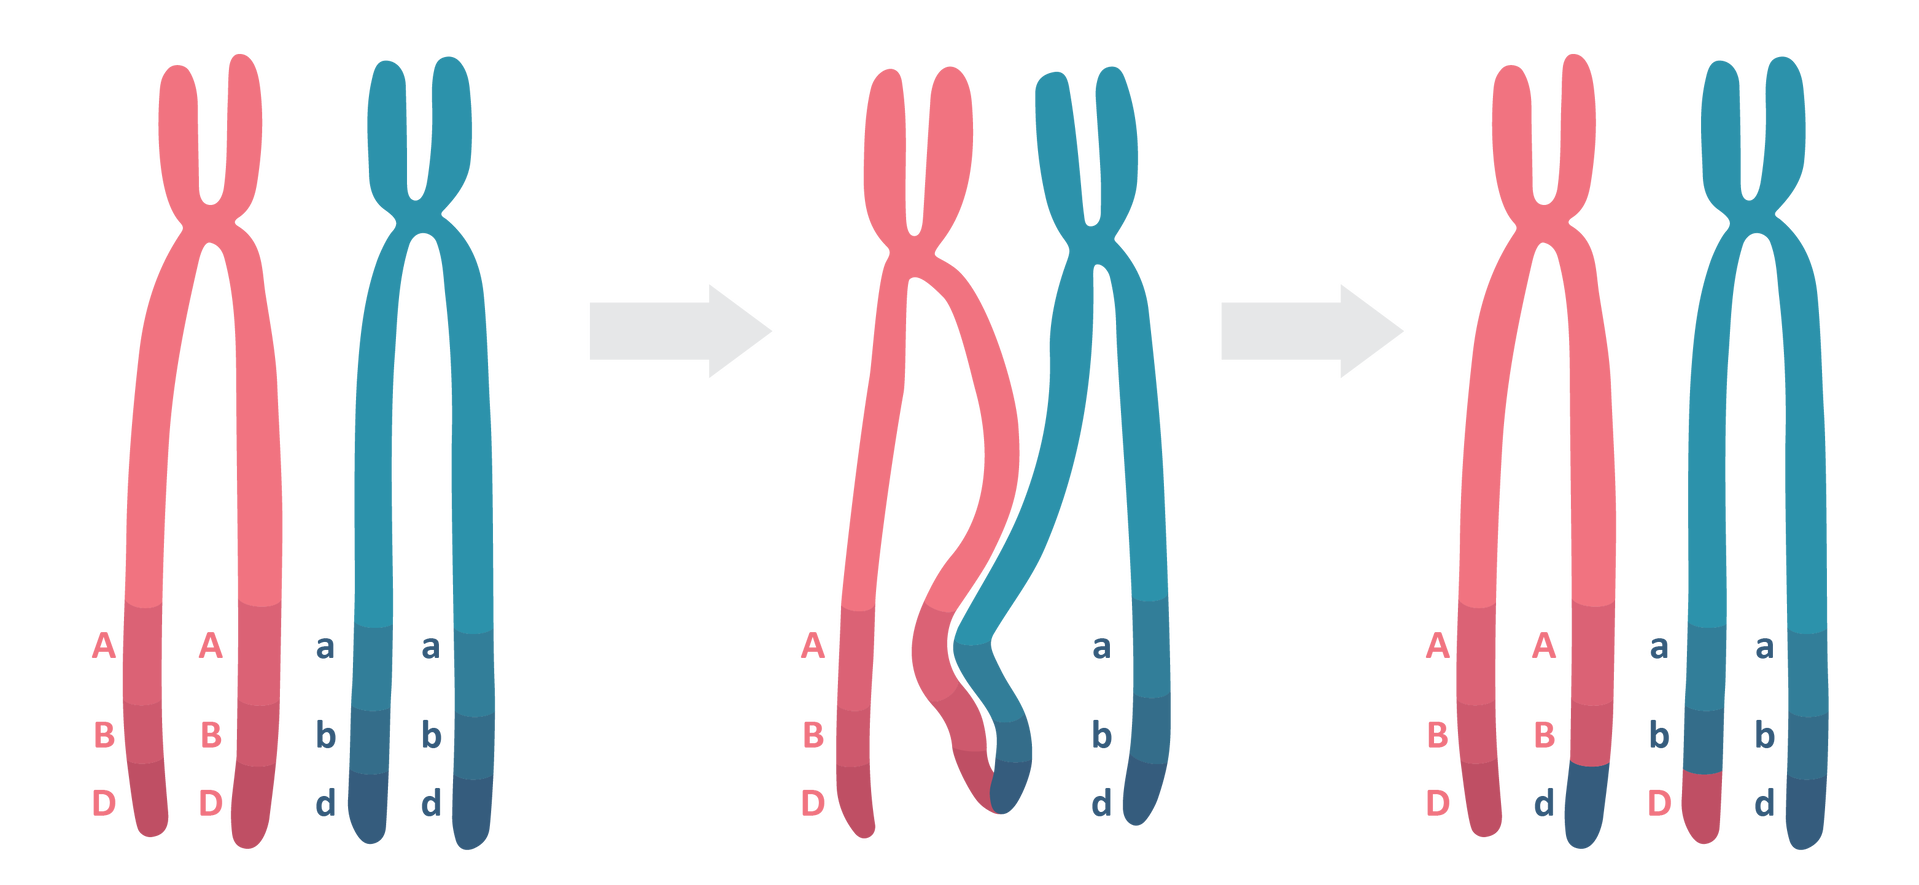 Ilustracja przedstawia zachodzący podczas  crossing‑over proces rekombinacji homologicznej, który umożliwia powstanie mozaiki genów ojcowskich i matczynych w chromosomach trafiających do gamet.  Na pierwszej ilustracji od lewej stronie widoczne są dwa duże chromosomy: czerwony i niebieski w kształcie litery X, których dolne ramiona są dłuższe od górnych. Przy dolnych ramionach czerwonego chromosomu znajdują się dwa pionowe rzędy dużych liter: A, B, D, a przy dolnych ramionach niebieskiego chromosomu znajdują się dwa pionowe rzędy małych liter: a, b, d. Na środkowej ilustracji przylegające ramiona chromosomów stykają się ze sobą. Na ilustracji z prawej strony część dłuższego, wewnętrznego ramienia litery chromosomu w kolorze czerwonym przyjmuje kolor niebieski, a część dłuższego, wewnętrznego ramienia litery chromosomu w kolorze niebieskim przyjmuje kolor czerwony. Podobnie litery zamieniają się miejscami – tam, gdzie była duża litera D w kolorze czerwonym, pojawia się mała litera d w kolorze niebieskim i na odwrót. 